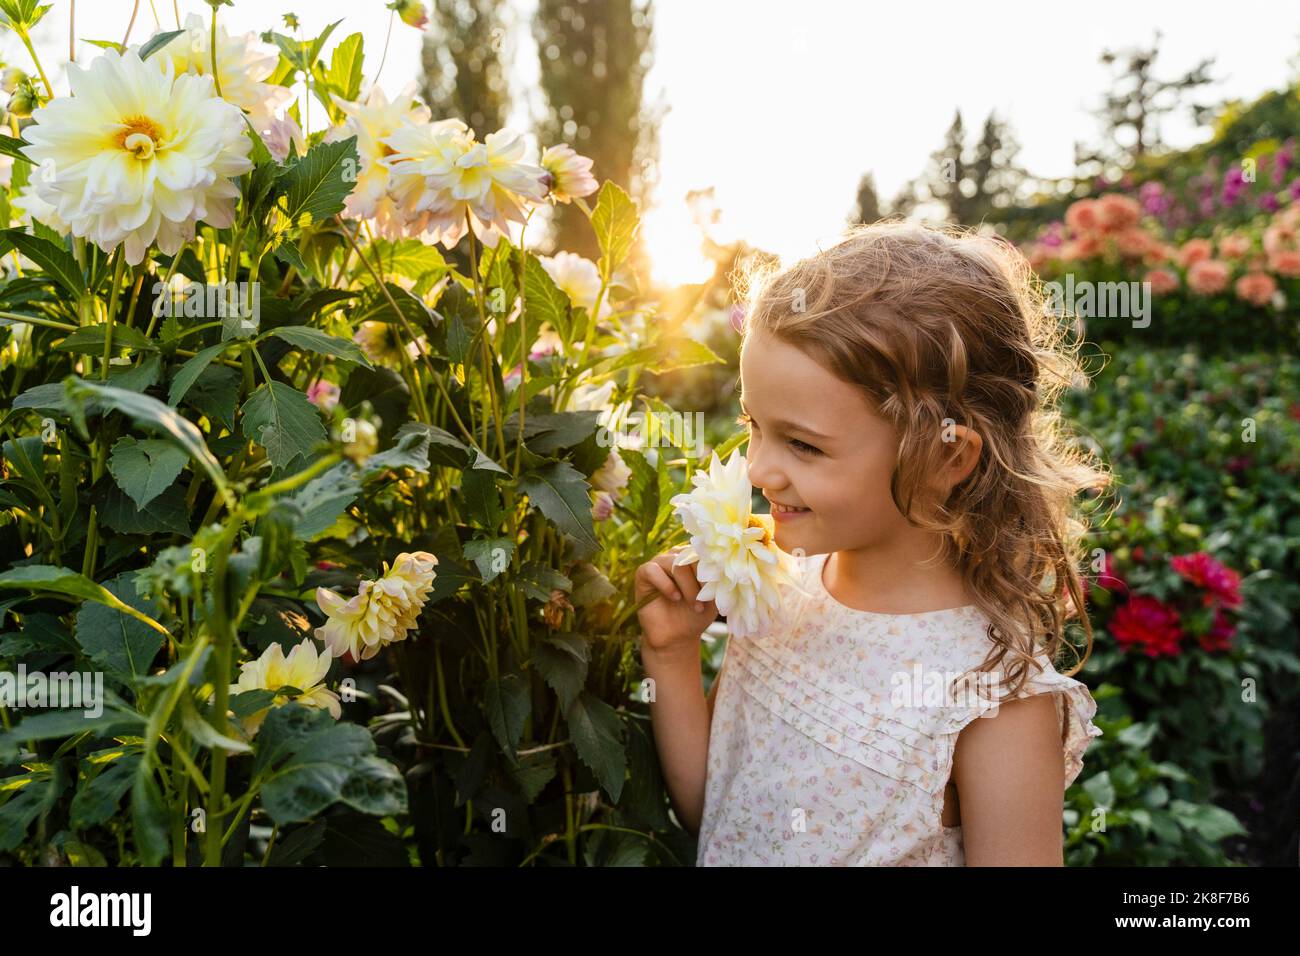 Little girl smelling flowers in garden Stock Photo